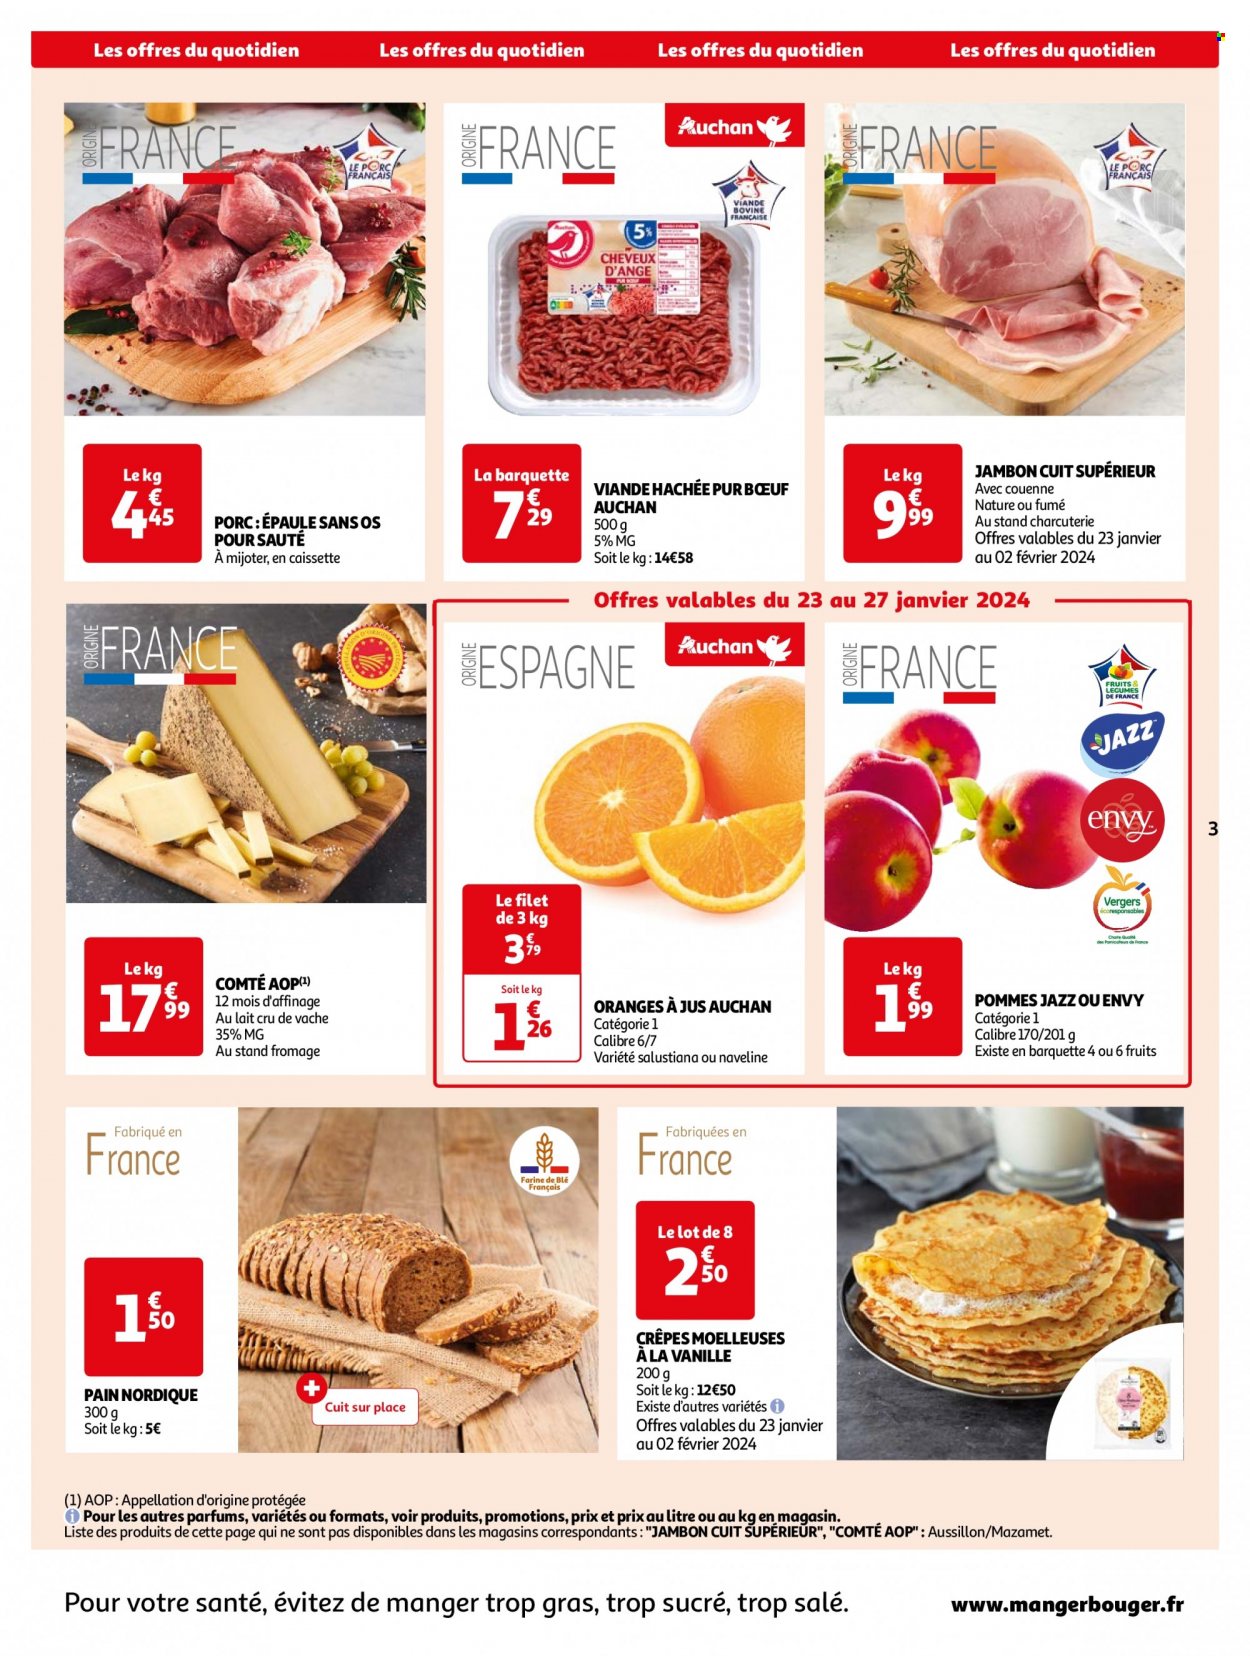 thumbnail - Catalogue Auchan - 23/01/2024 - 29/12/2024 - Produits soldés - viande de porc, viande, pain, crêpes, viande hachée, jambon, charcuterie, Comté, fromage, jus d'orange, jus. Page 3.